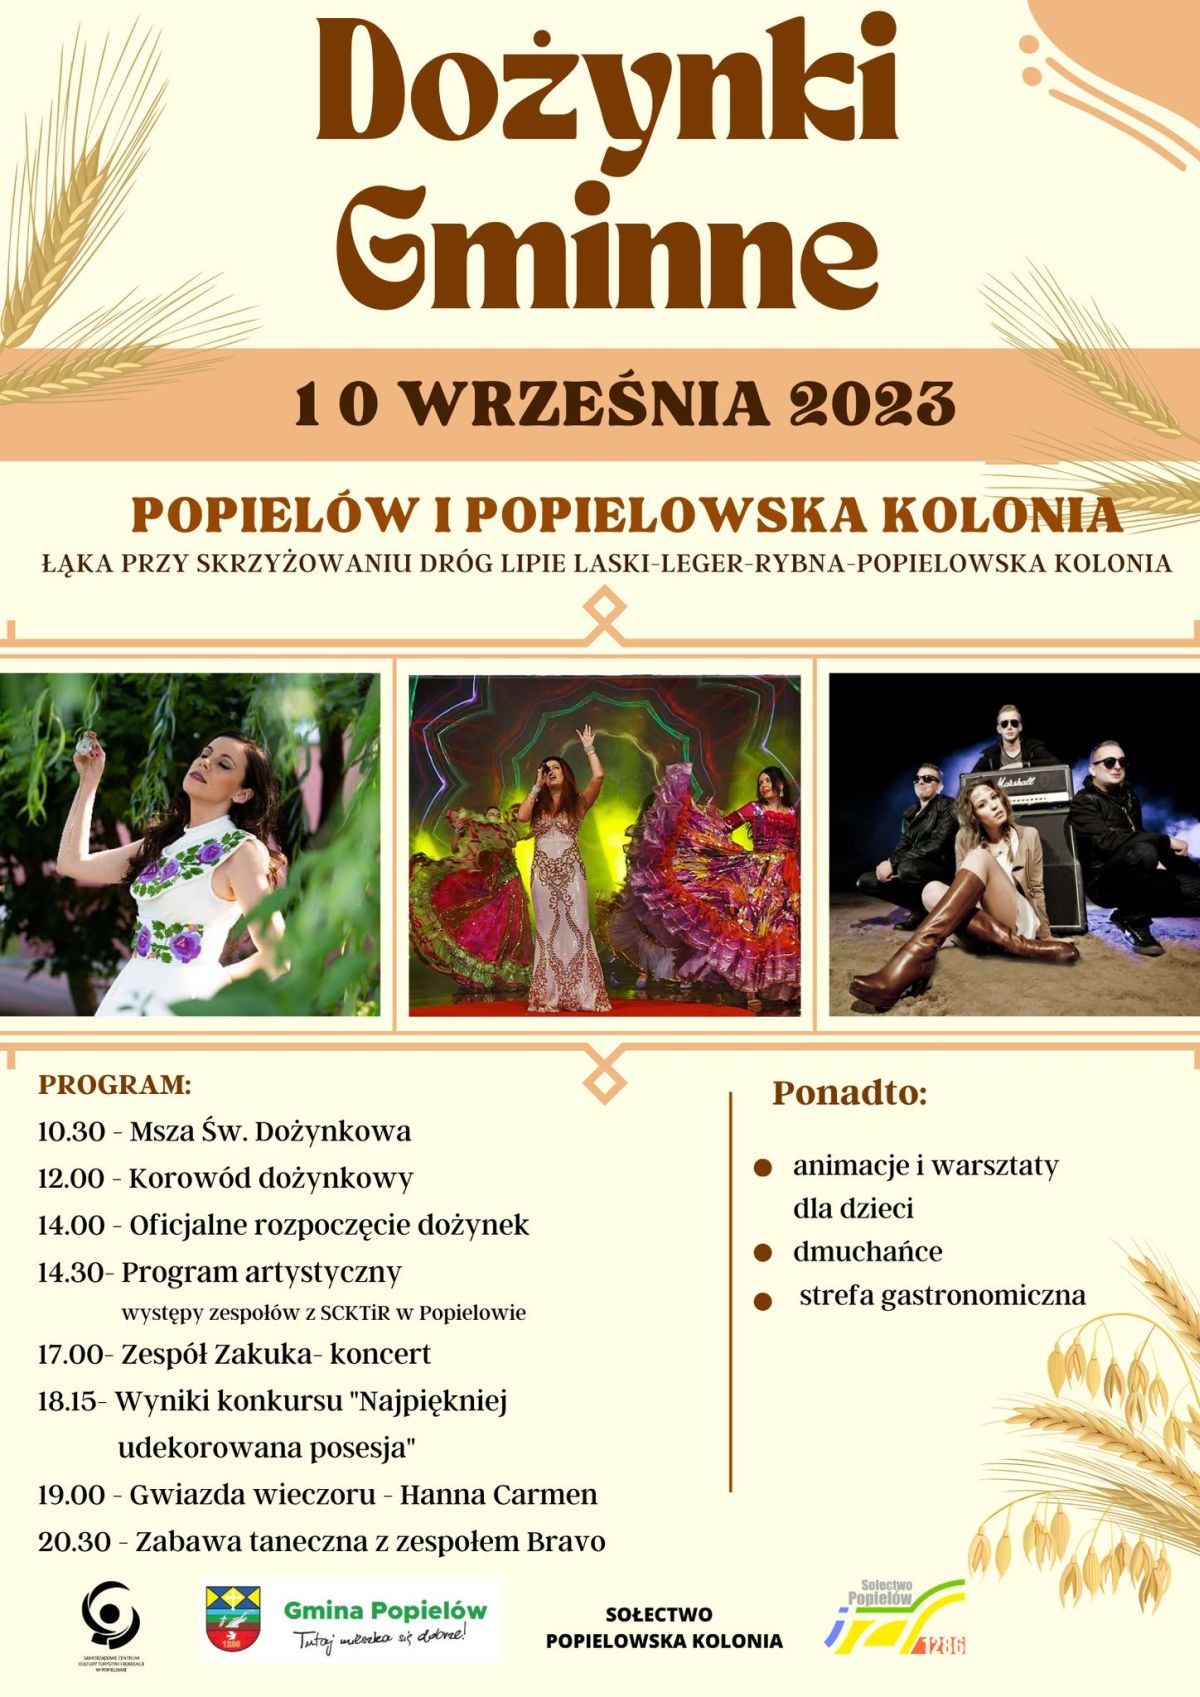 Już 10 września odbędą się dożynki gminy Popielów